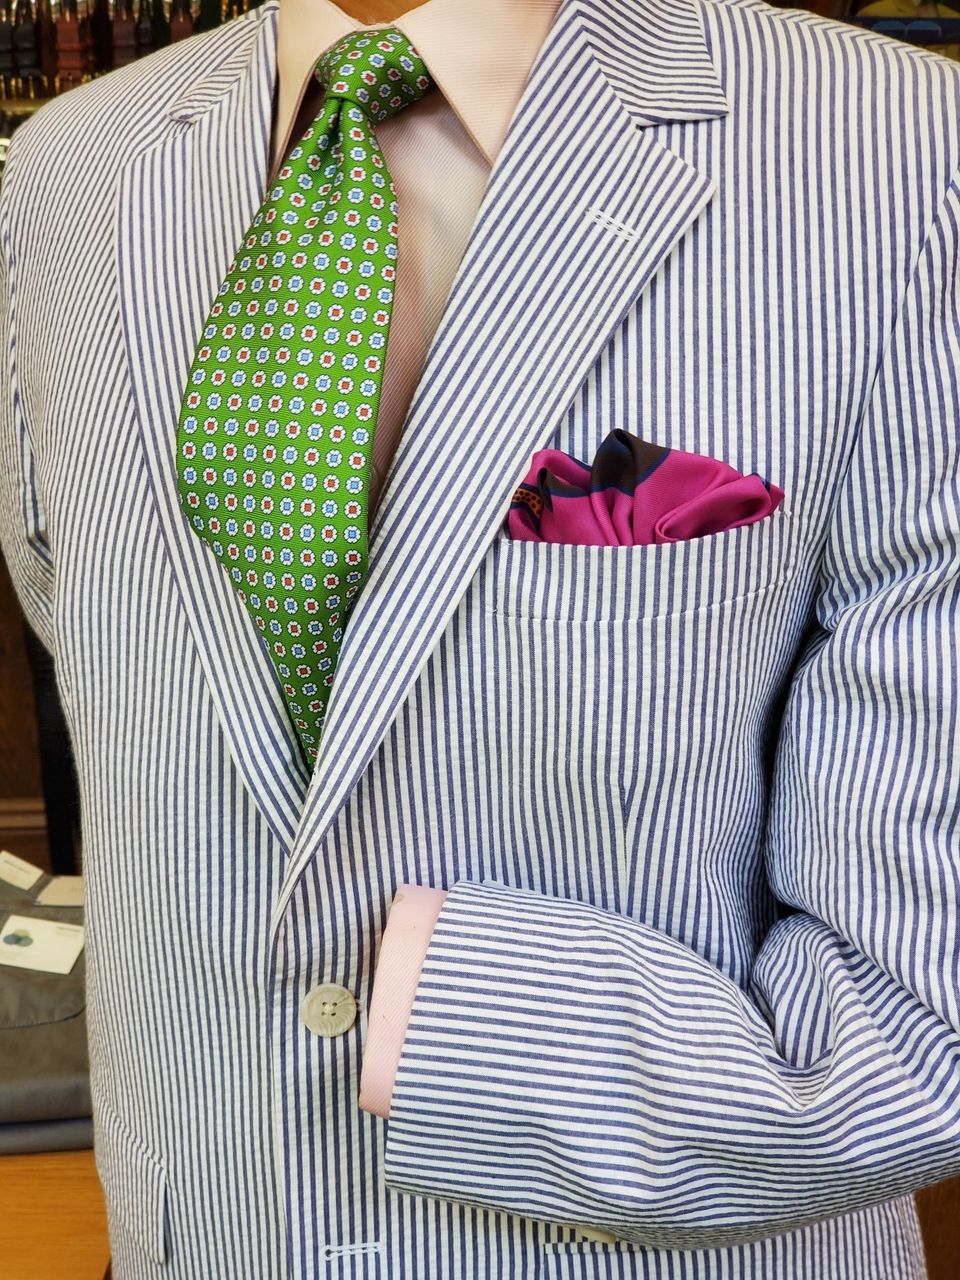 Luxury Gentlemens Country Maroon Black Check Tie Tweed Woven Wool Style